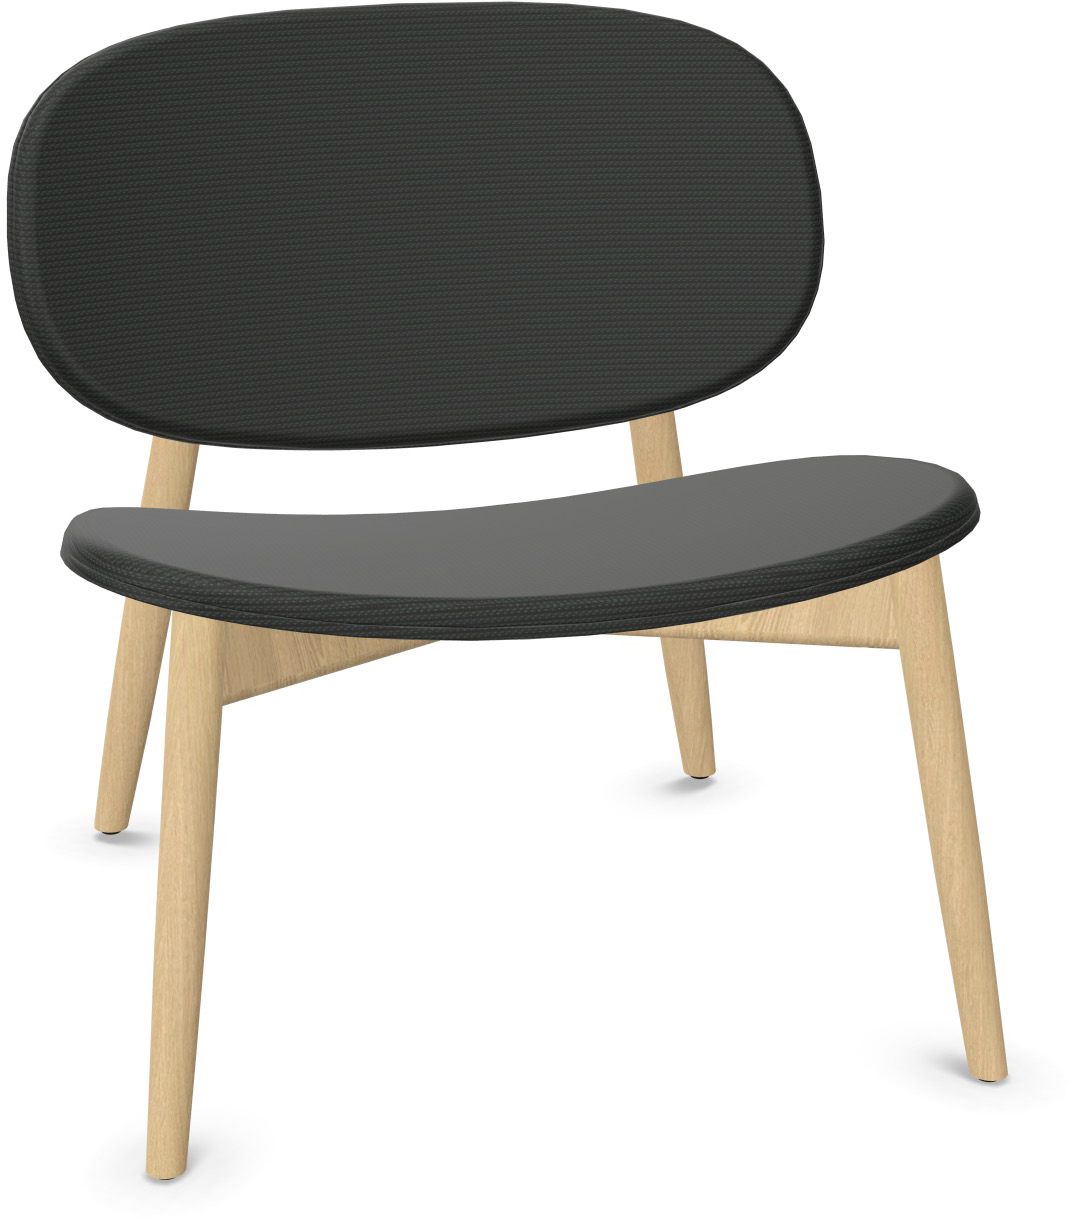 HARMO Relaxsessel in Schwarz präsentiert im Onlineshop von KAQTU Design AG. Sessel ist von Infiniti Design